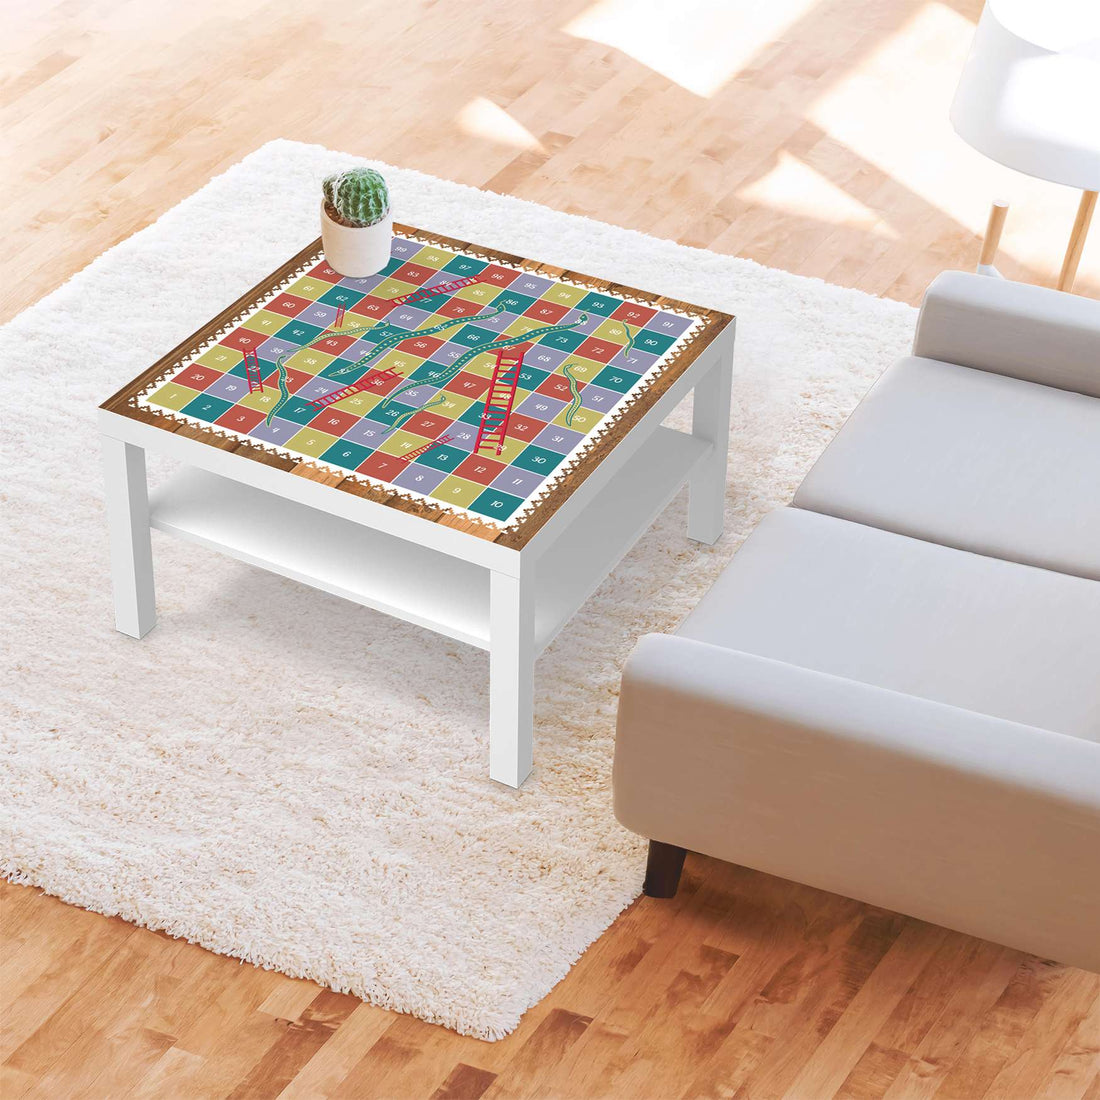 Selbstklebende Folie Spieltisch Leiternspiel - IKEA Lack Tisch 78x78 cm - Wohnzimmer